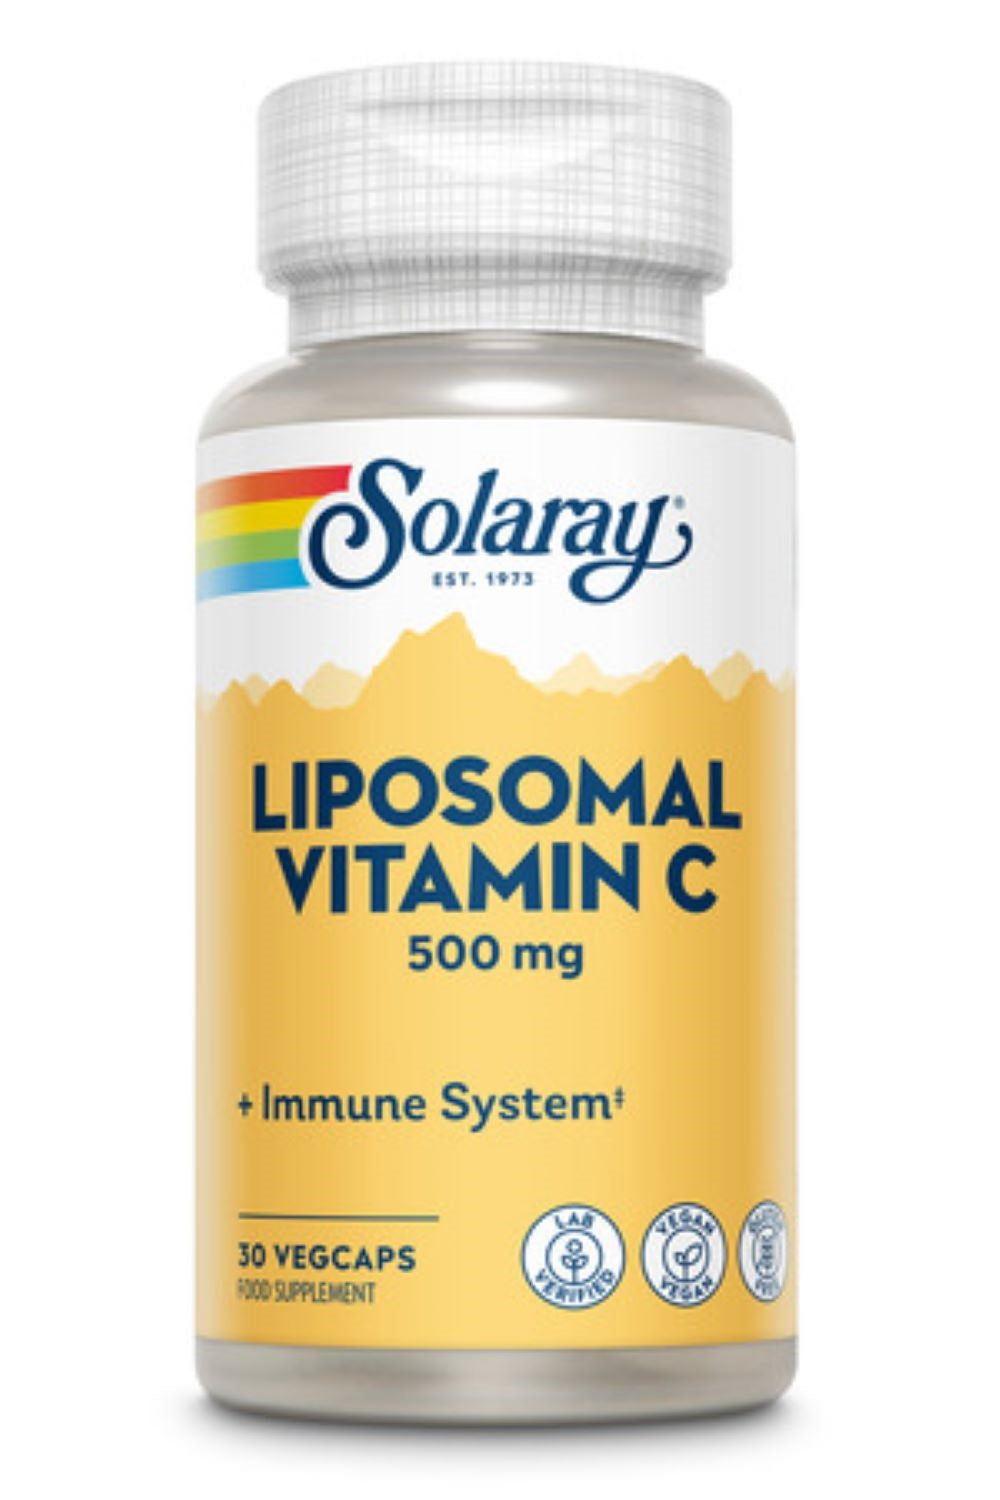 Solaray λιποσωματική βιταμίνη c- 500mg, 30 φυτικά καπάκια